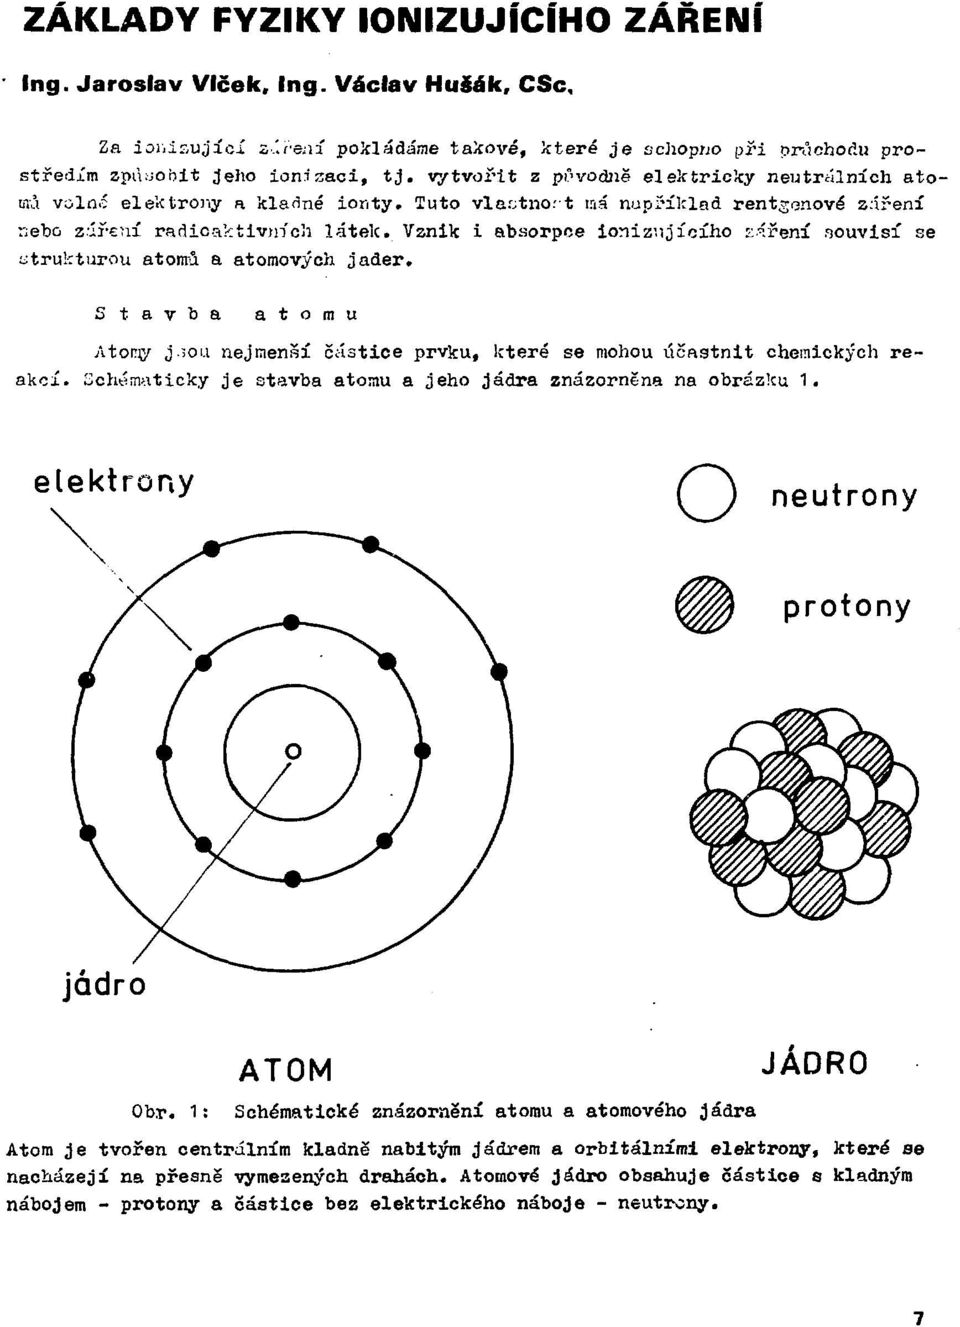 Vznik i absorpce ionizujícího ::áření souvisí se strukturou atomů a atomových jader. Stavba atomu Atony j.;ou nejmenší částice prvku, které se mohou účastnit chemických reakcí.